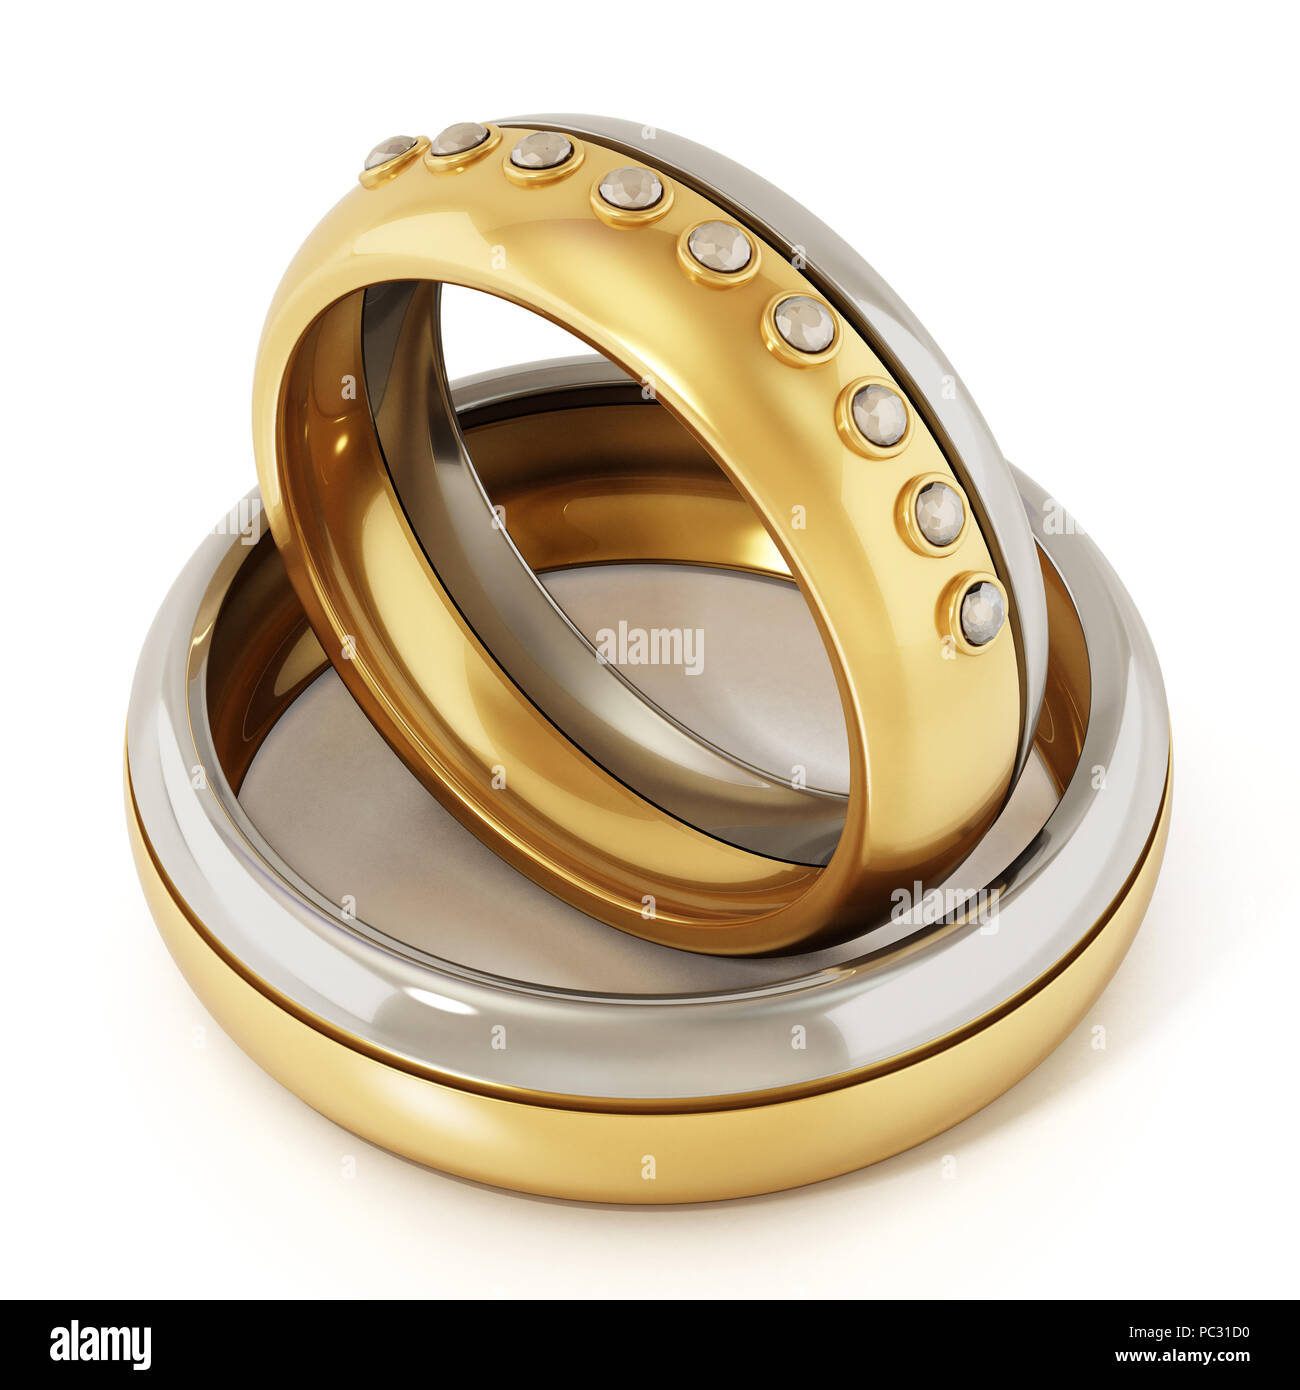 Les anneaux de mariage pour la mariée et le marié isolé sur fond blanc. 3D illustration. Banque D'Images